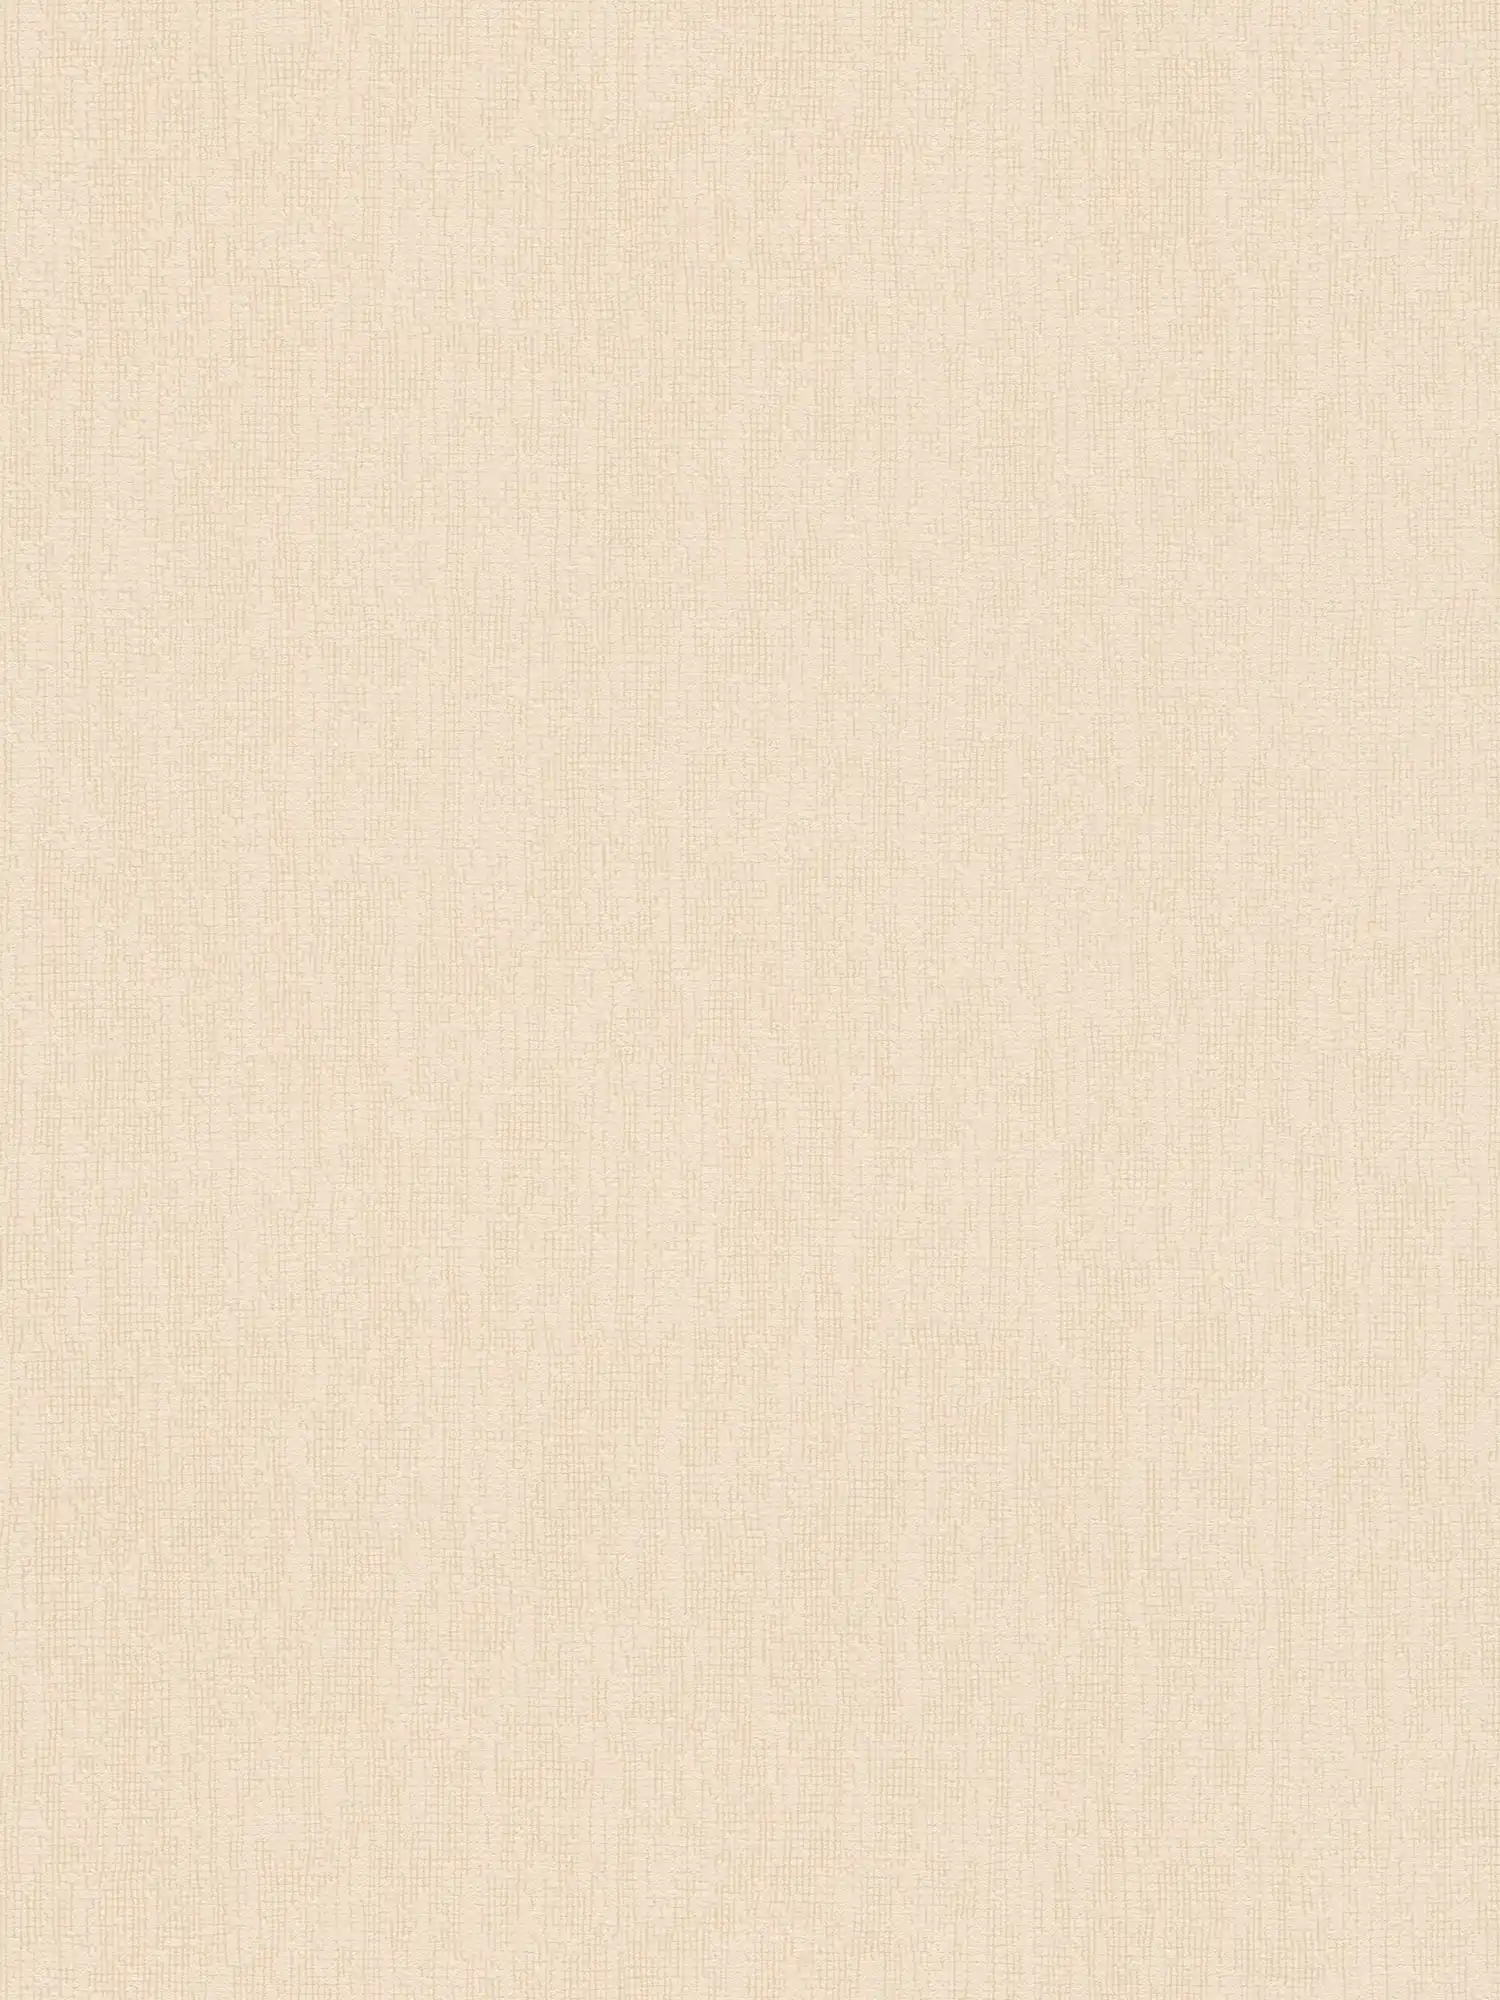 Papier peint beige uni avec détails structurés dans le style Scandi
